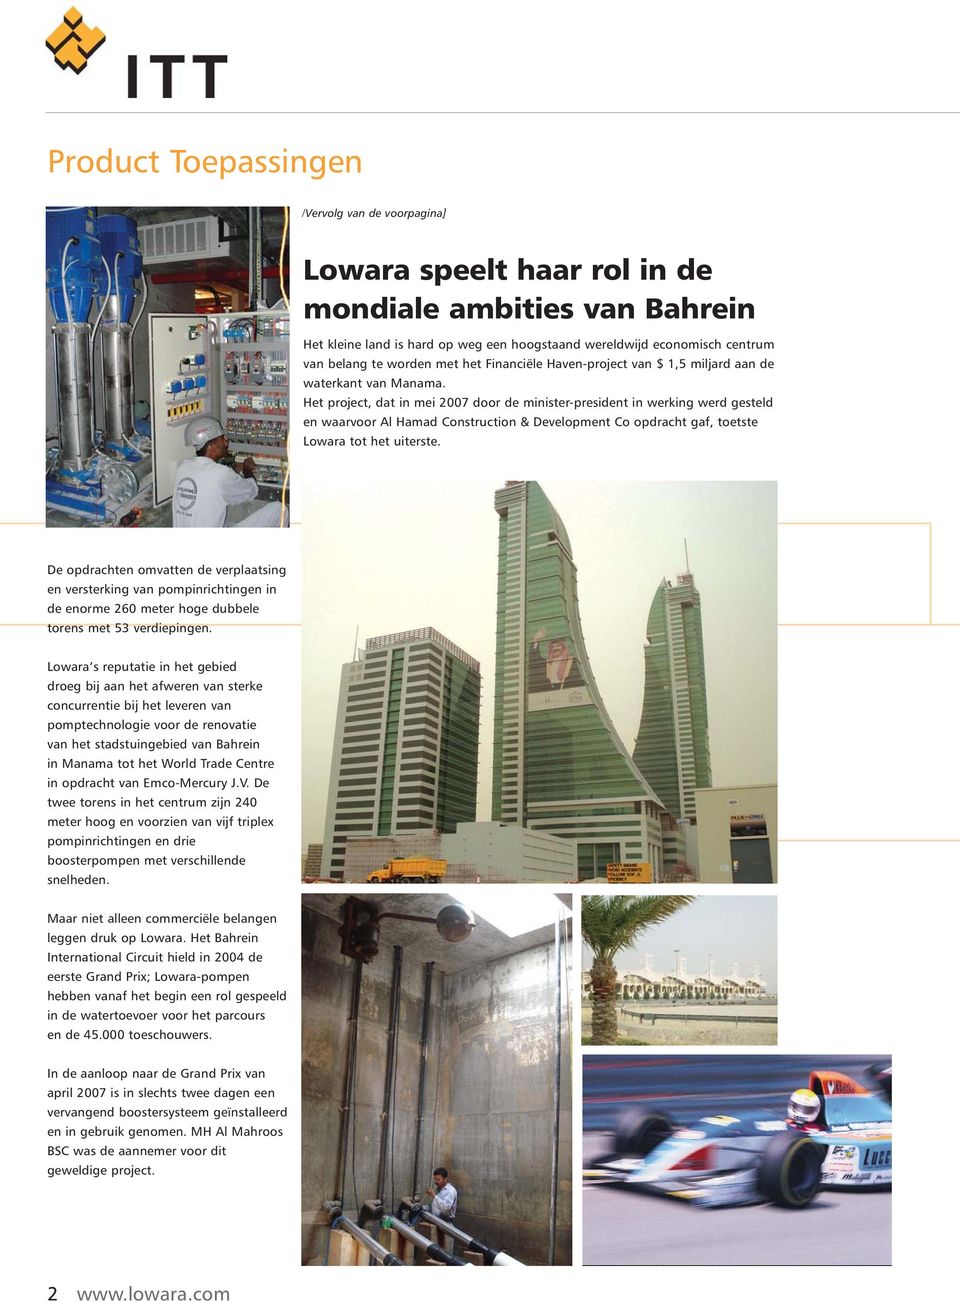 Het project, dat in mei 2007 door de minister-president in werking werd gesteld en waarvoor Al Hamad Construction & Development Co opdracht gaf, toetste Lowara tot het uiterste.